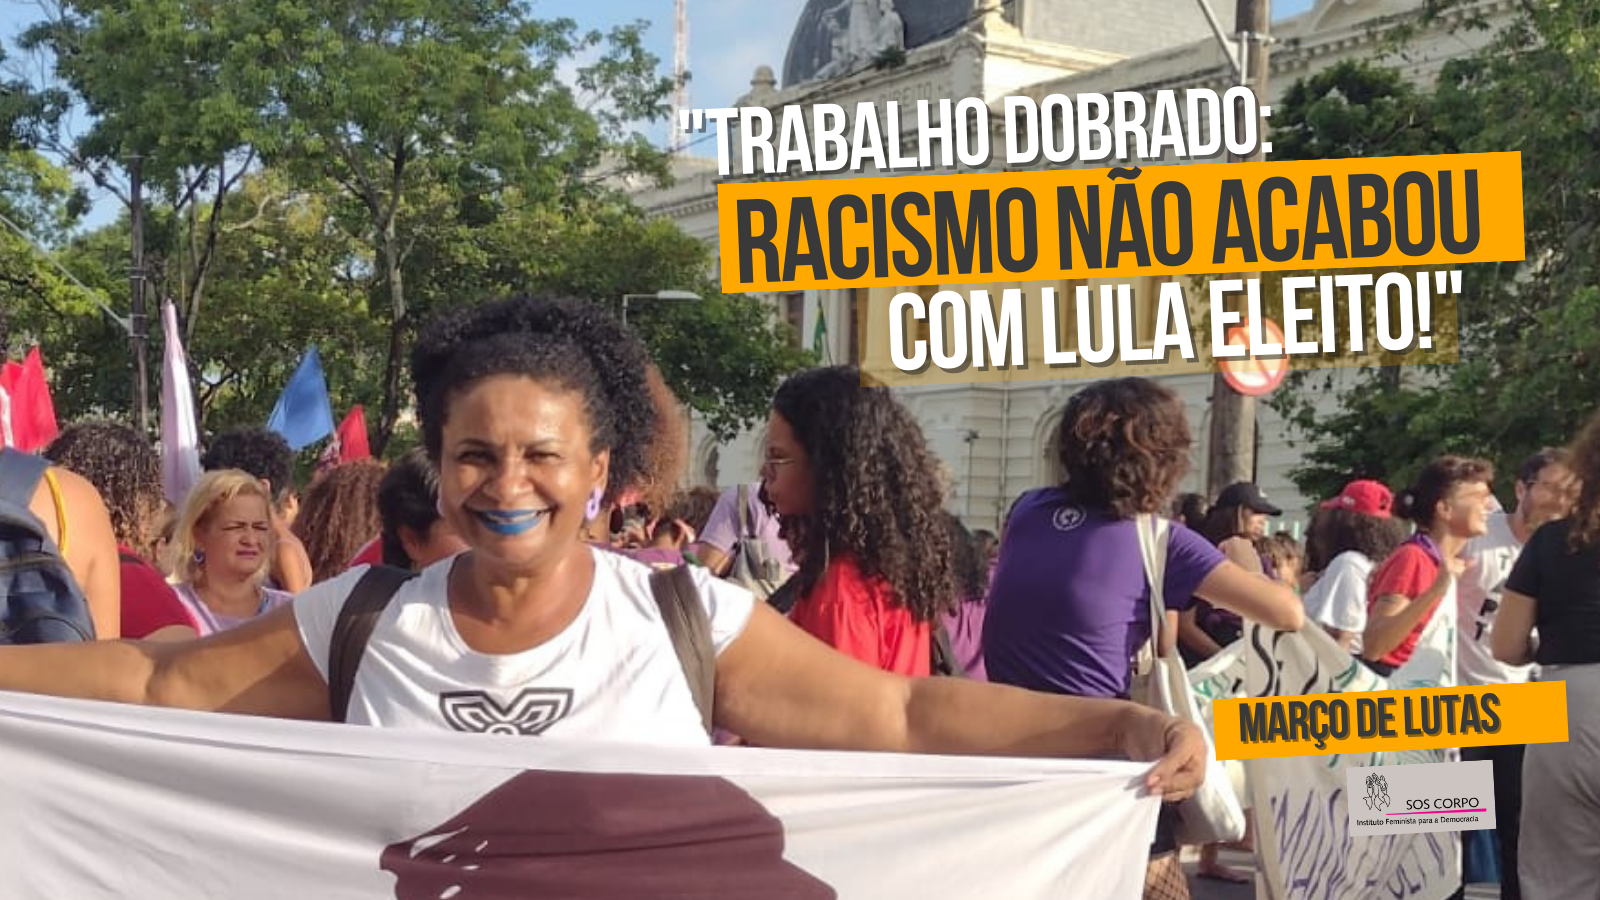 Março de lutas: “Racismo não acabou com Lula eleito!”